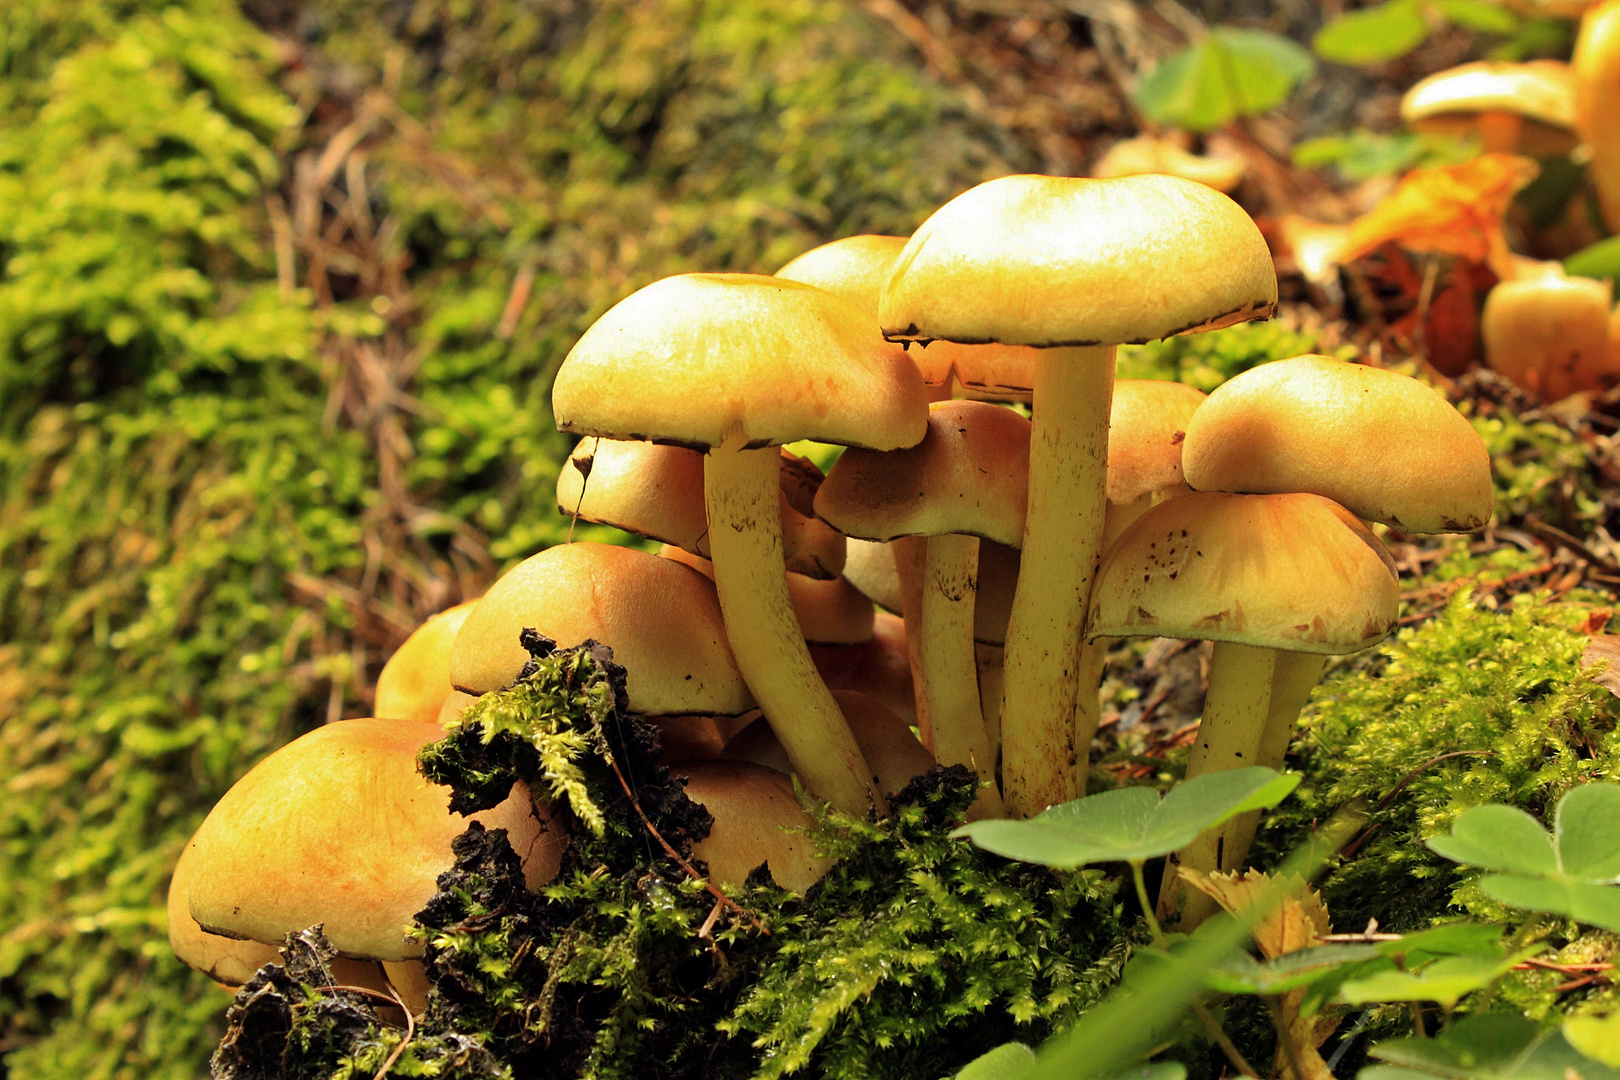 Pilze am Waldboden